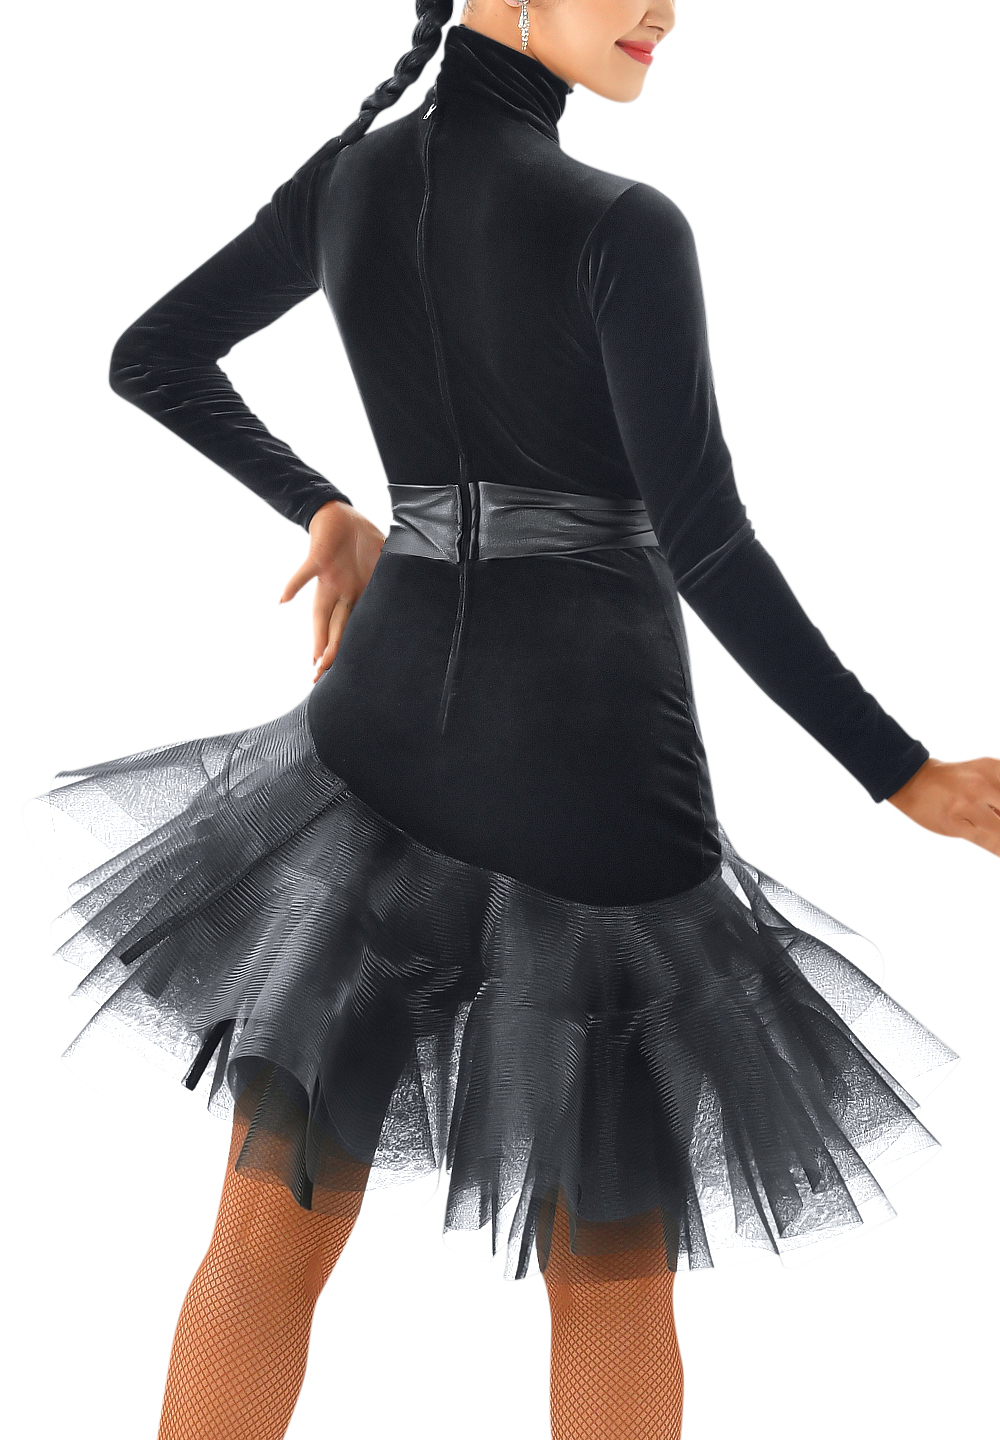 Taka Black Swan Latin Performance Dress 3L-145